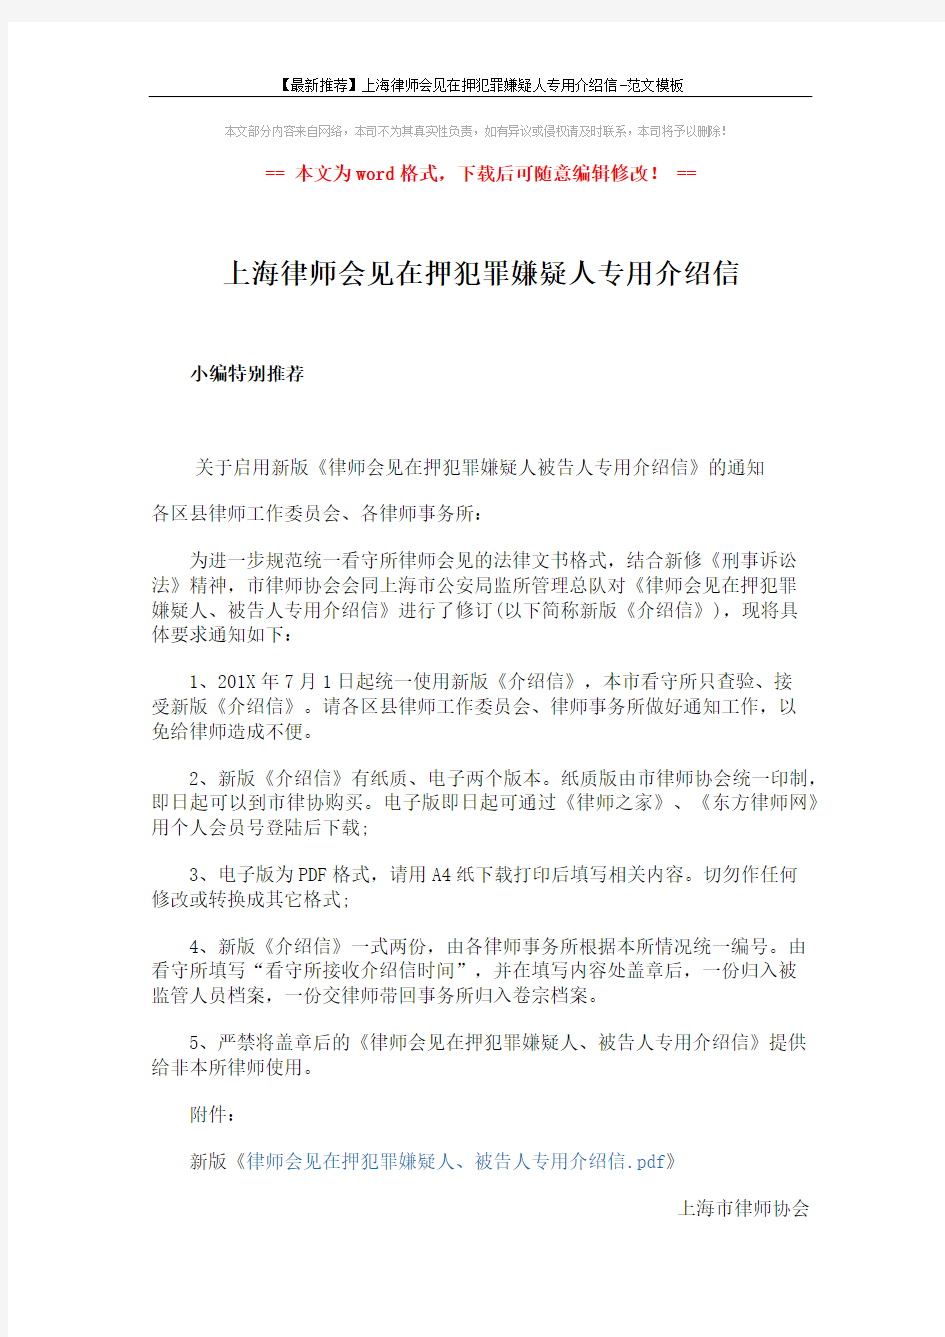 【最新推荐】上海律师会见在押犯罪嫌疑人专用介绍信-范文模板 (2页)